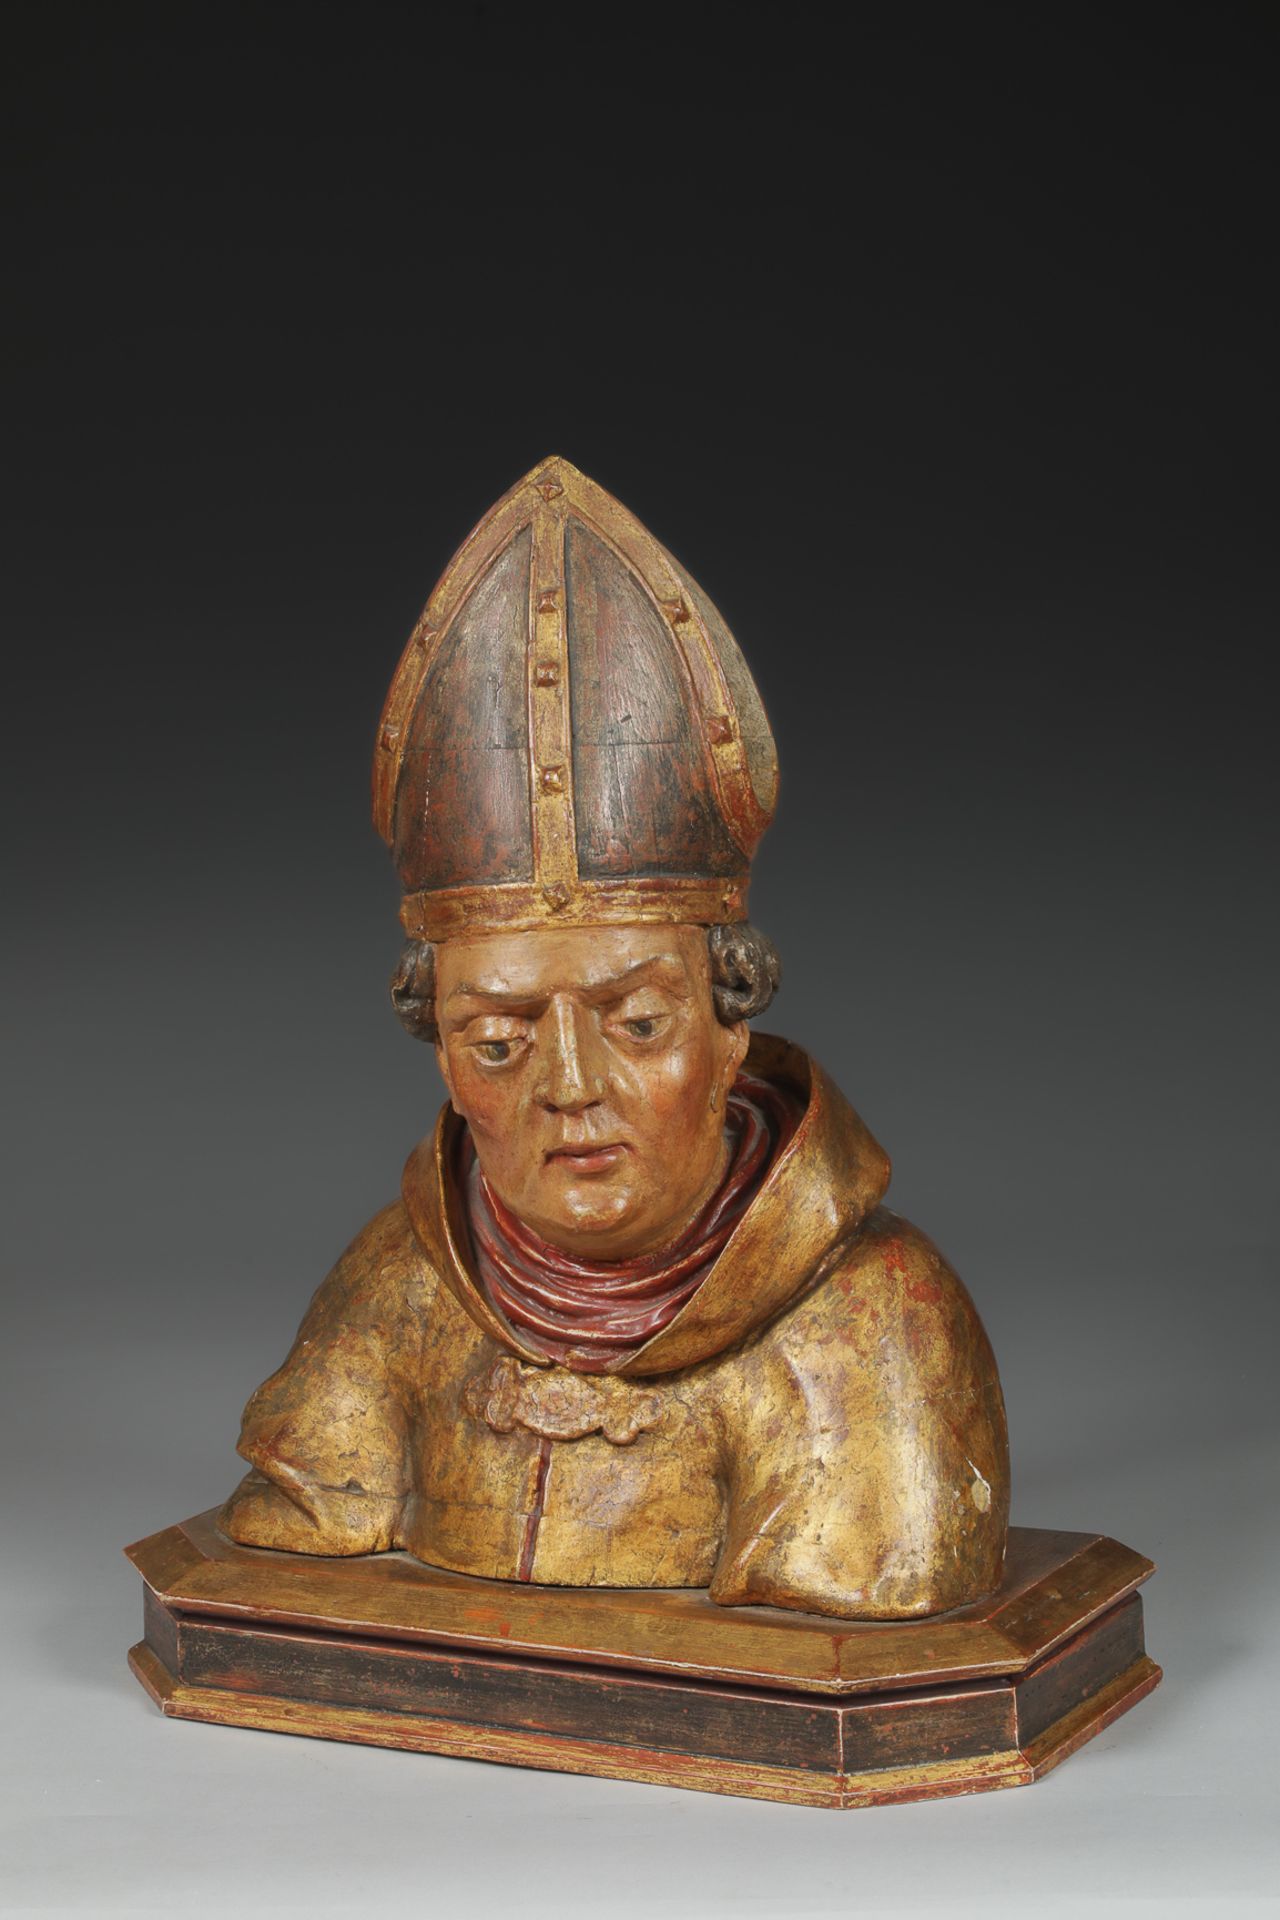 Buste d’évêque reliquaire Bois de noyer polychrome et doré 15 eme siècleHt 73cm x37cm x20cmVendu par